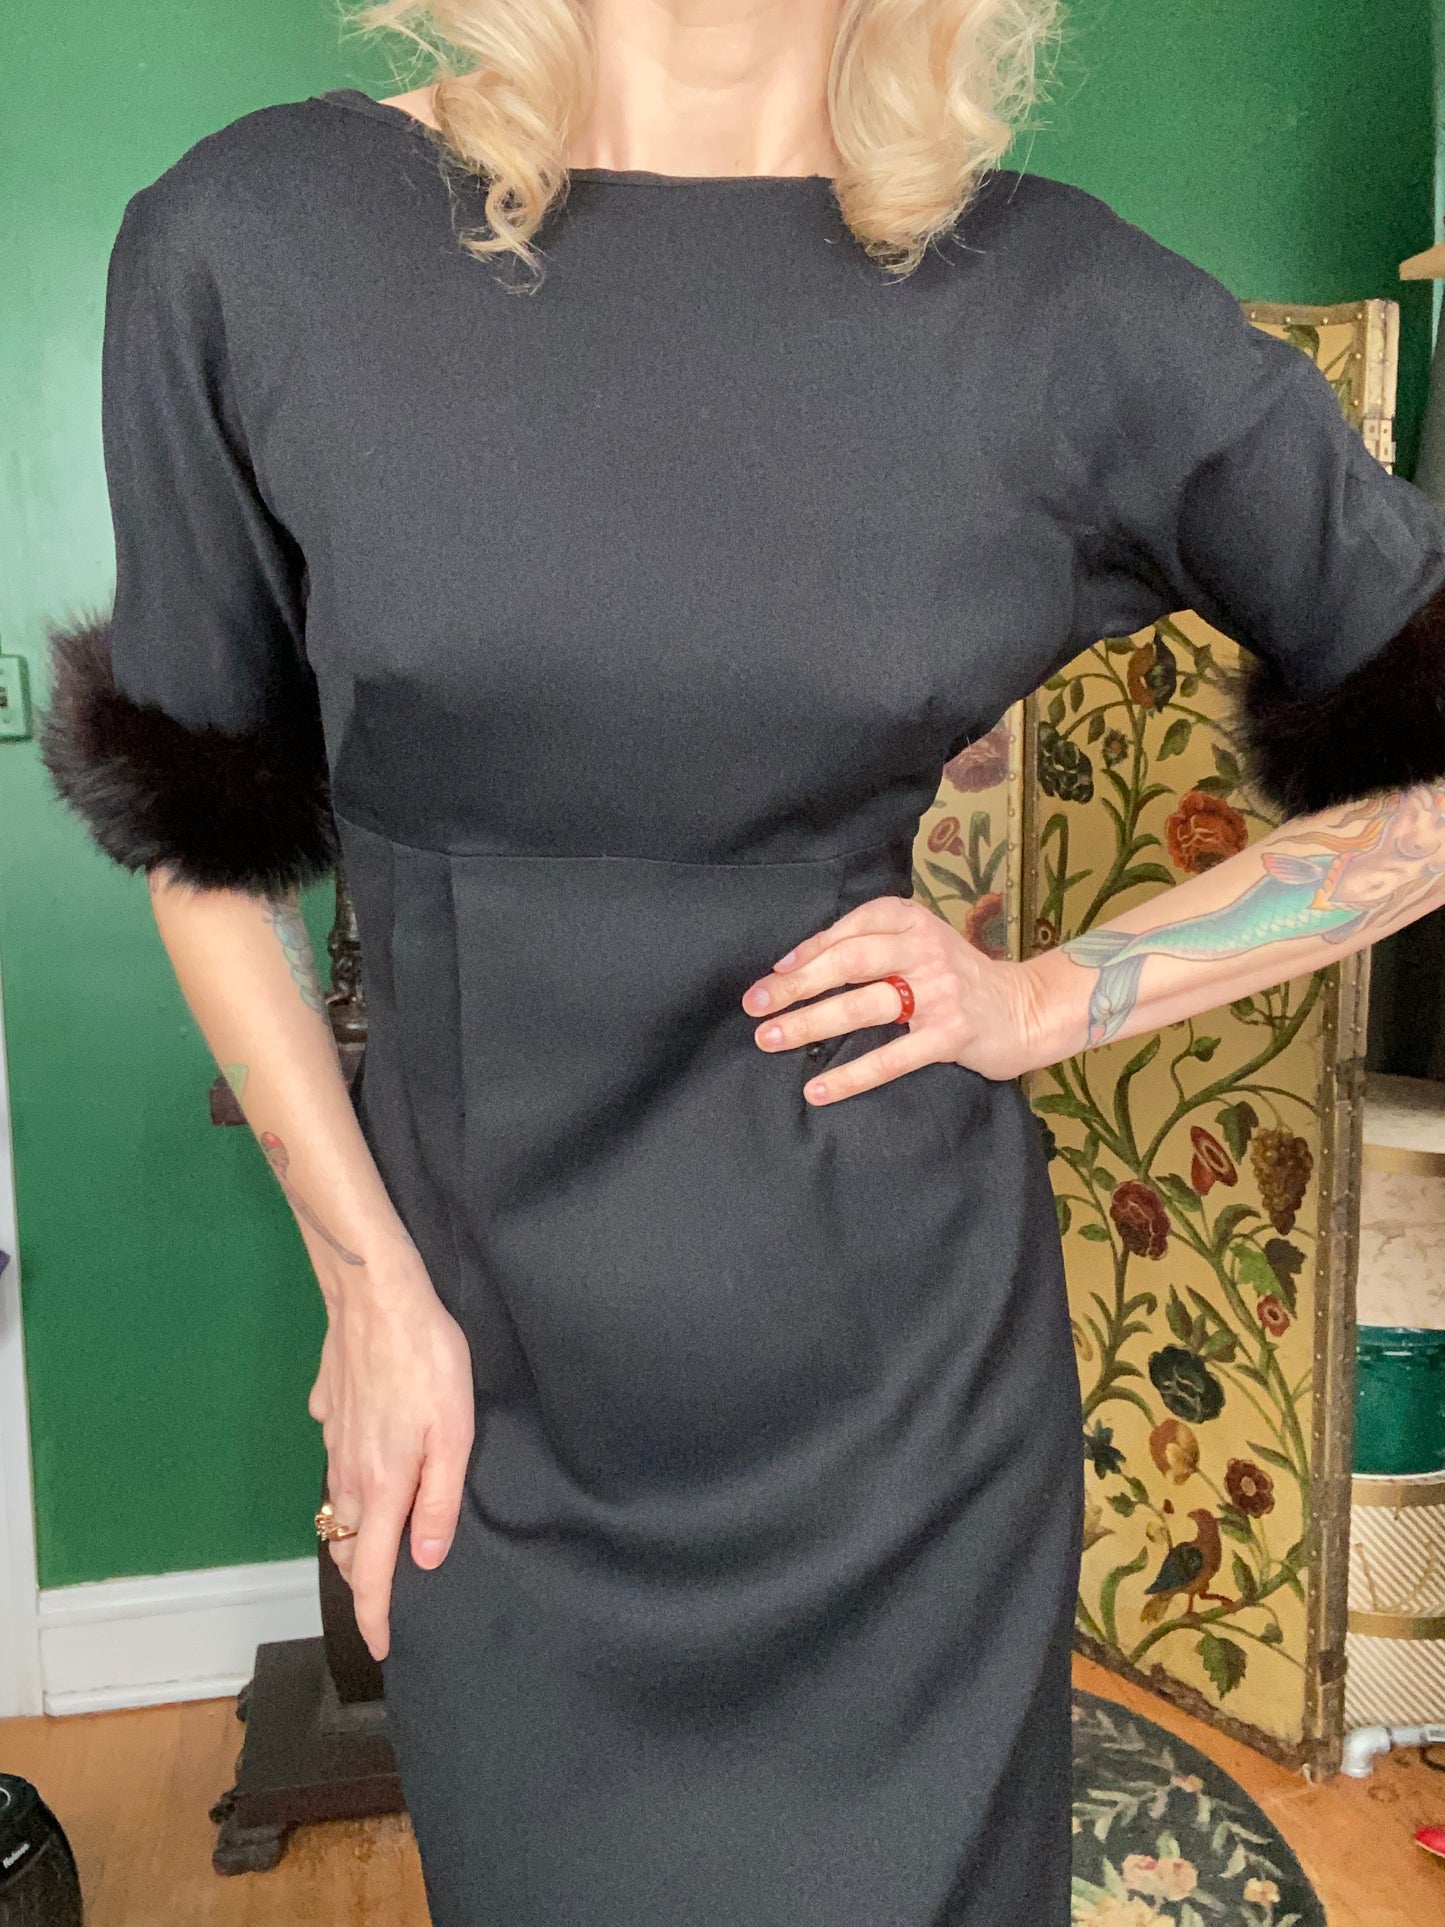 1950s Low back Black Dress with Fur Cuffs - Medium